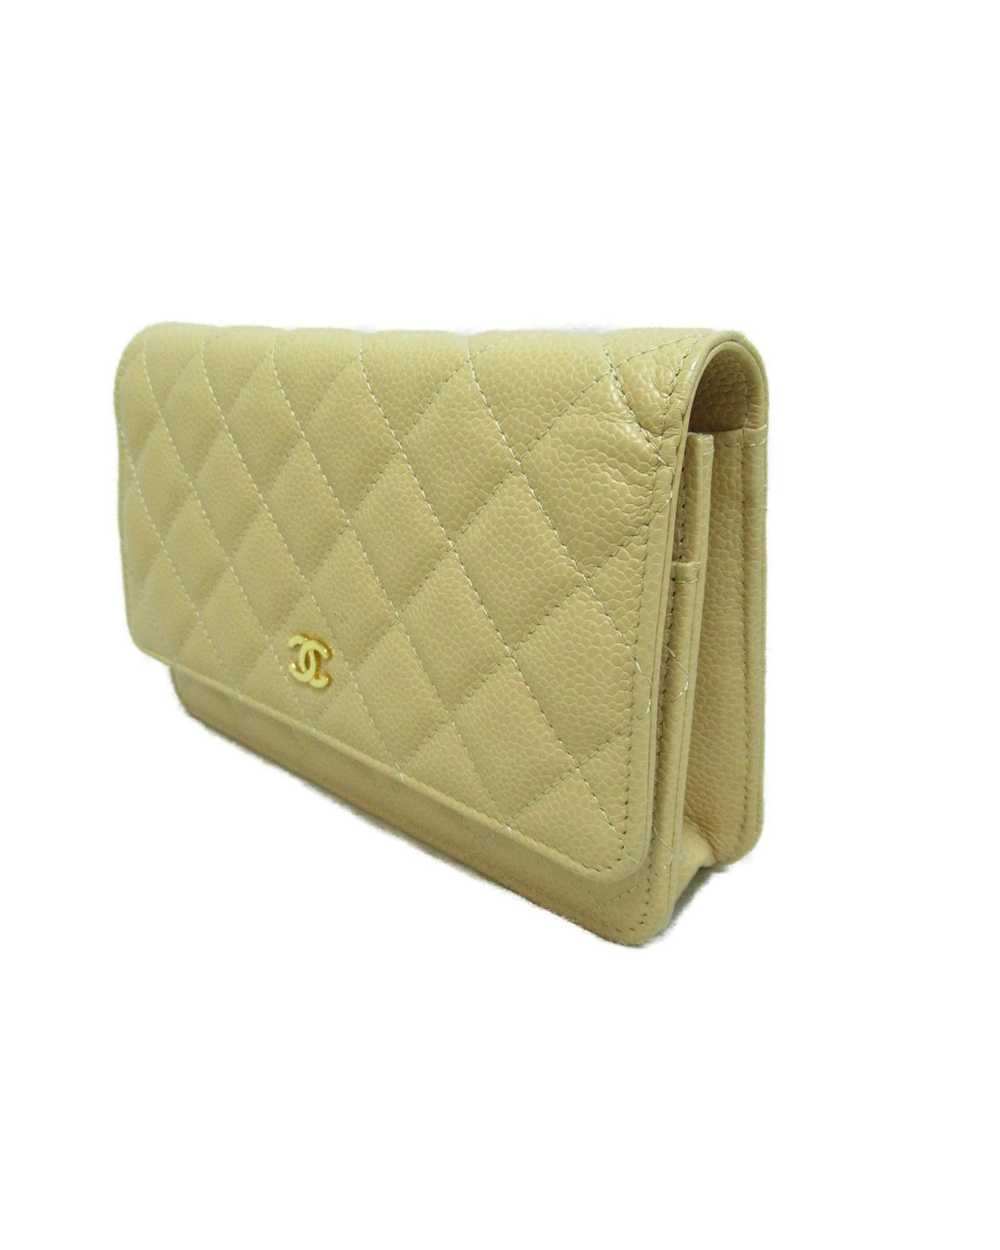 Chanel Beige Leather Shoulder Bag - image 2